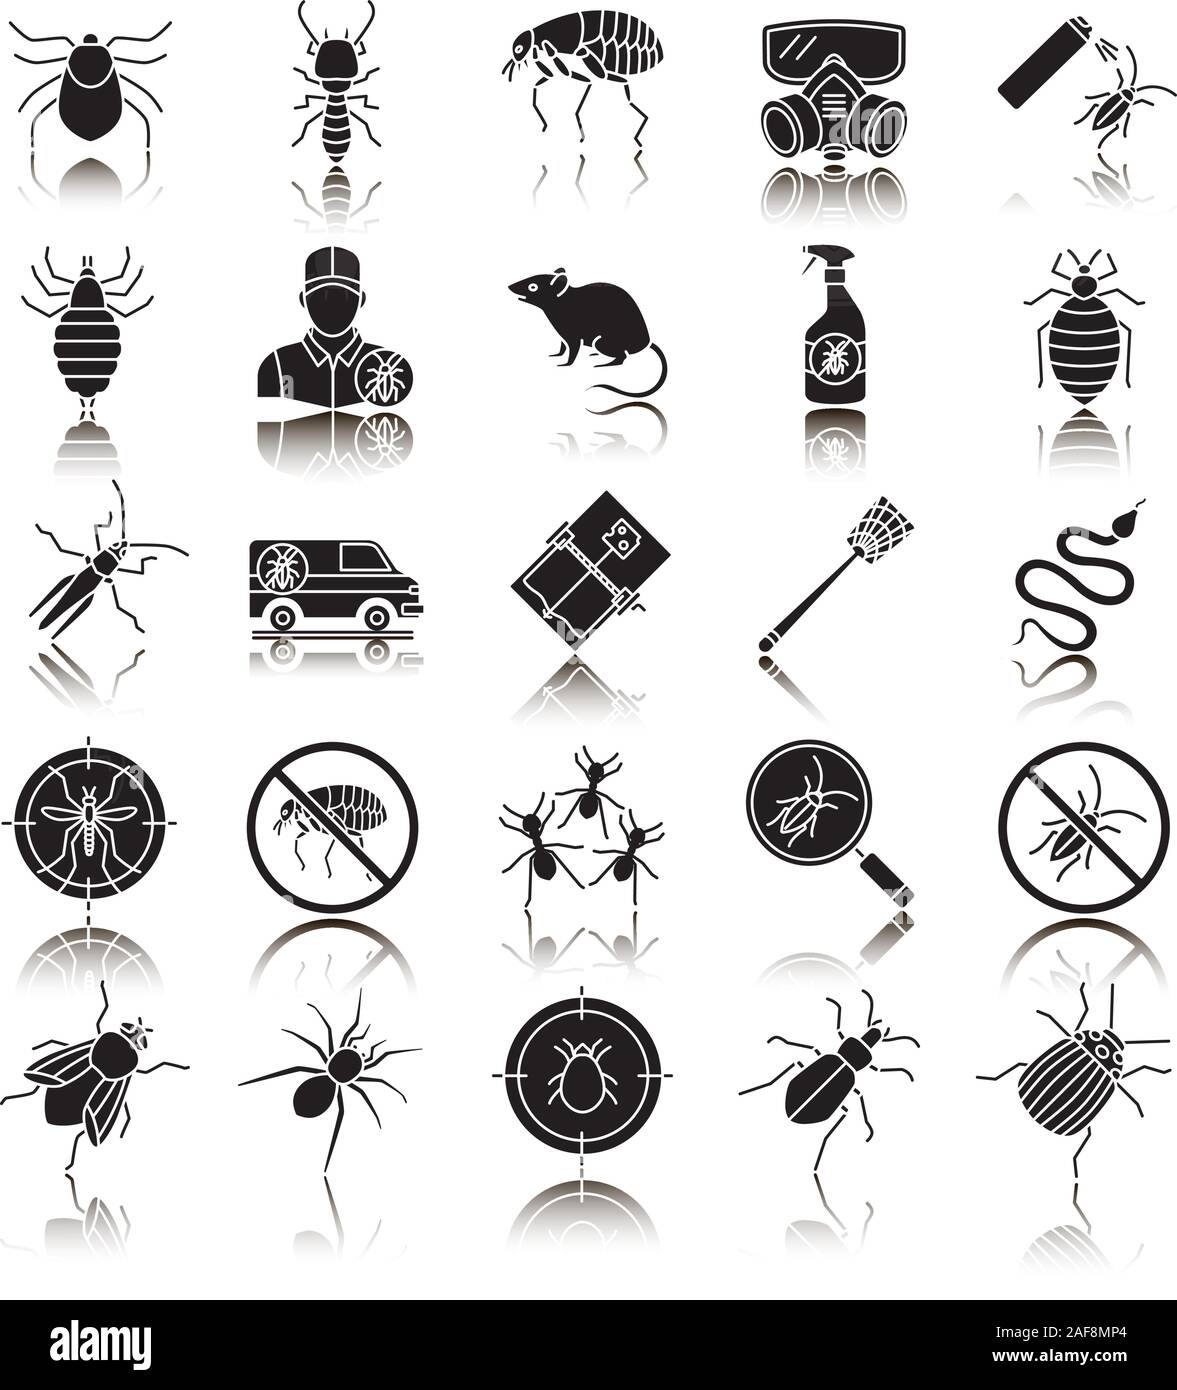 Control de plagas pictograma negro sombra conjunto de iconos. El exterminio. Los animales y los insectos nocivos. Ilustraciones vectoriales aislado Ilustración del Vector